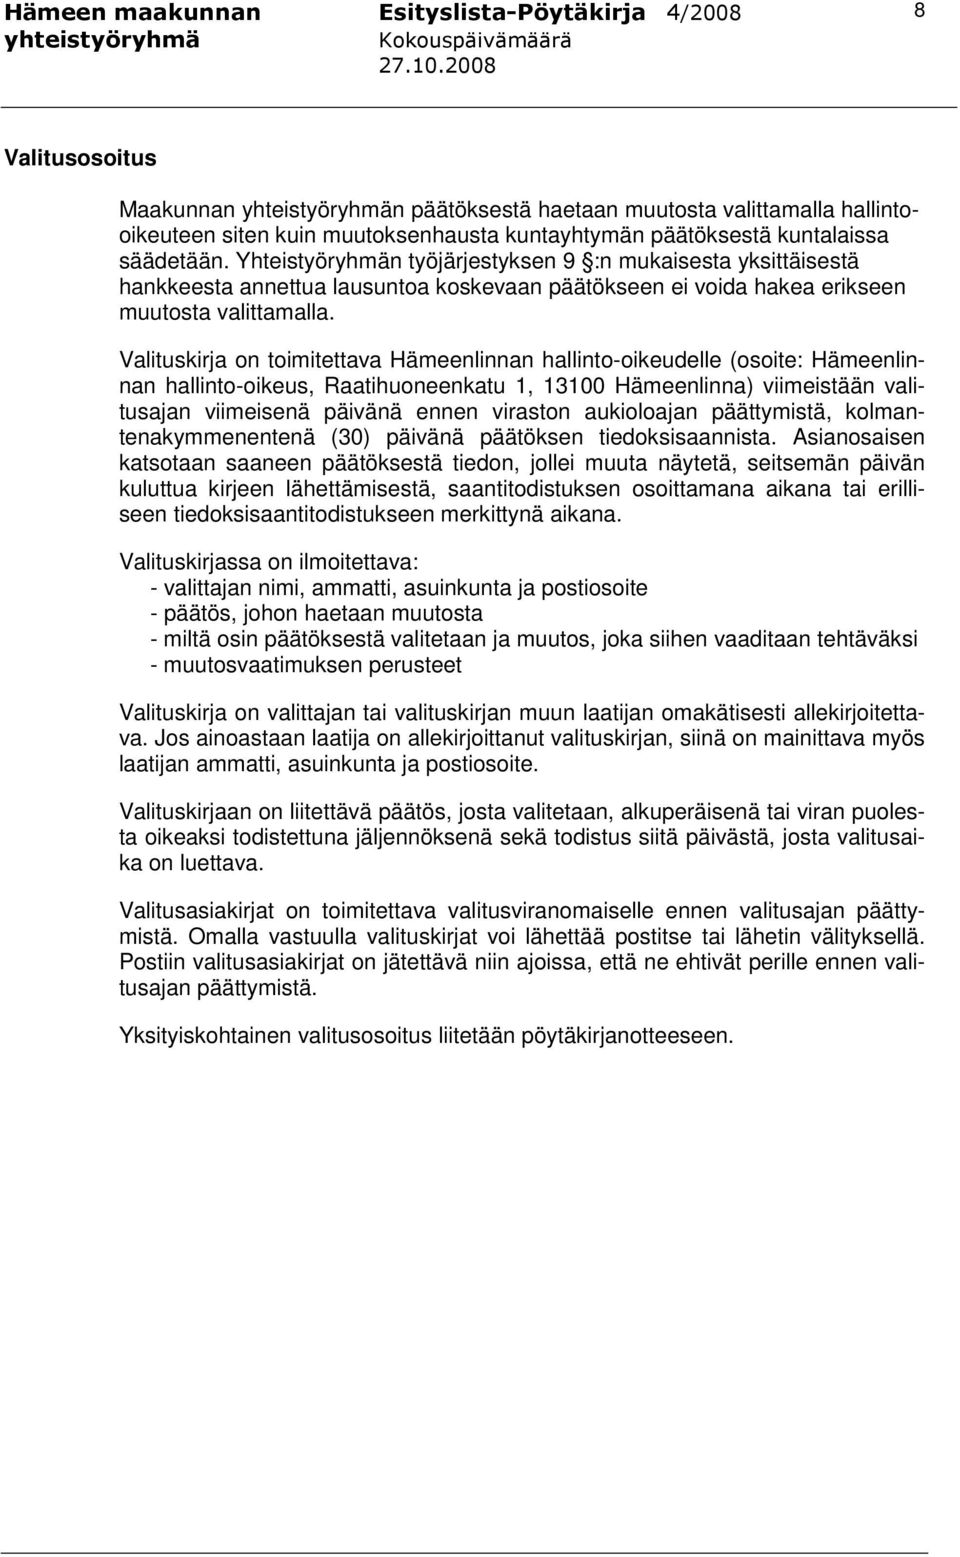 Valituskirja on toimitettava Hämeenlinnan hallinto-oikeudelle (osoite: Hämeenlinnan hallinto-oikeus, Raatihuoneenkatu 1, 13100 Hämeenlinna) viimeistään valitusajan viimeisenä päivänä ennen viraston